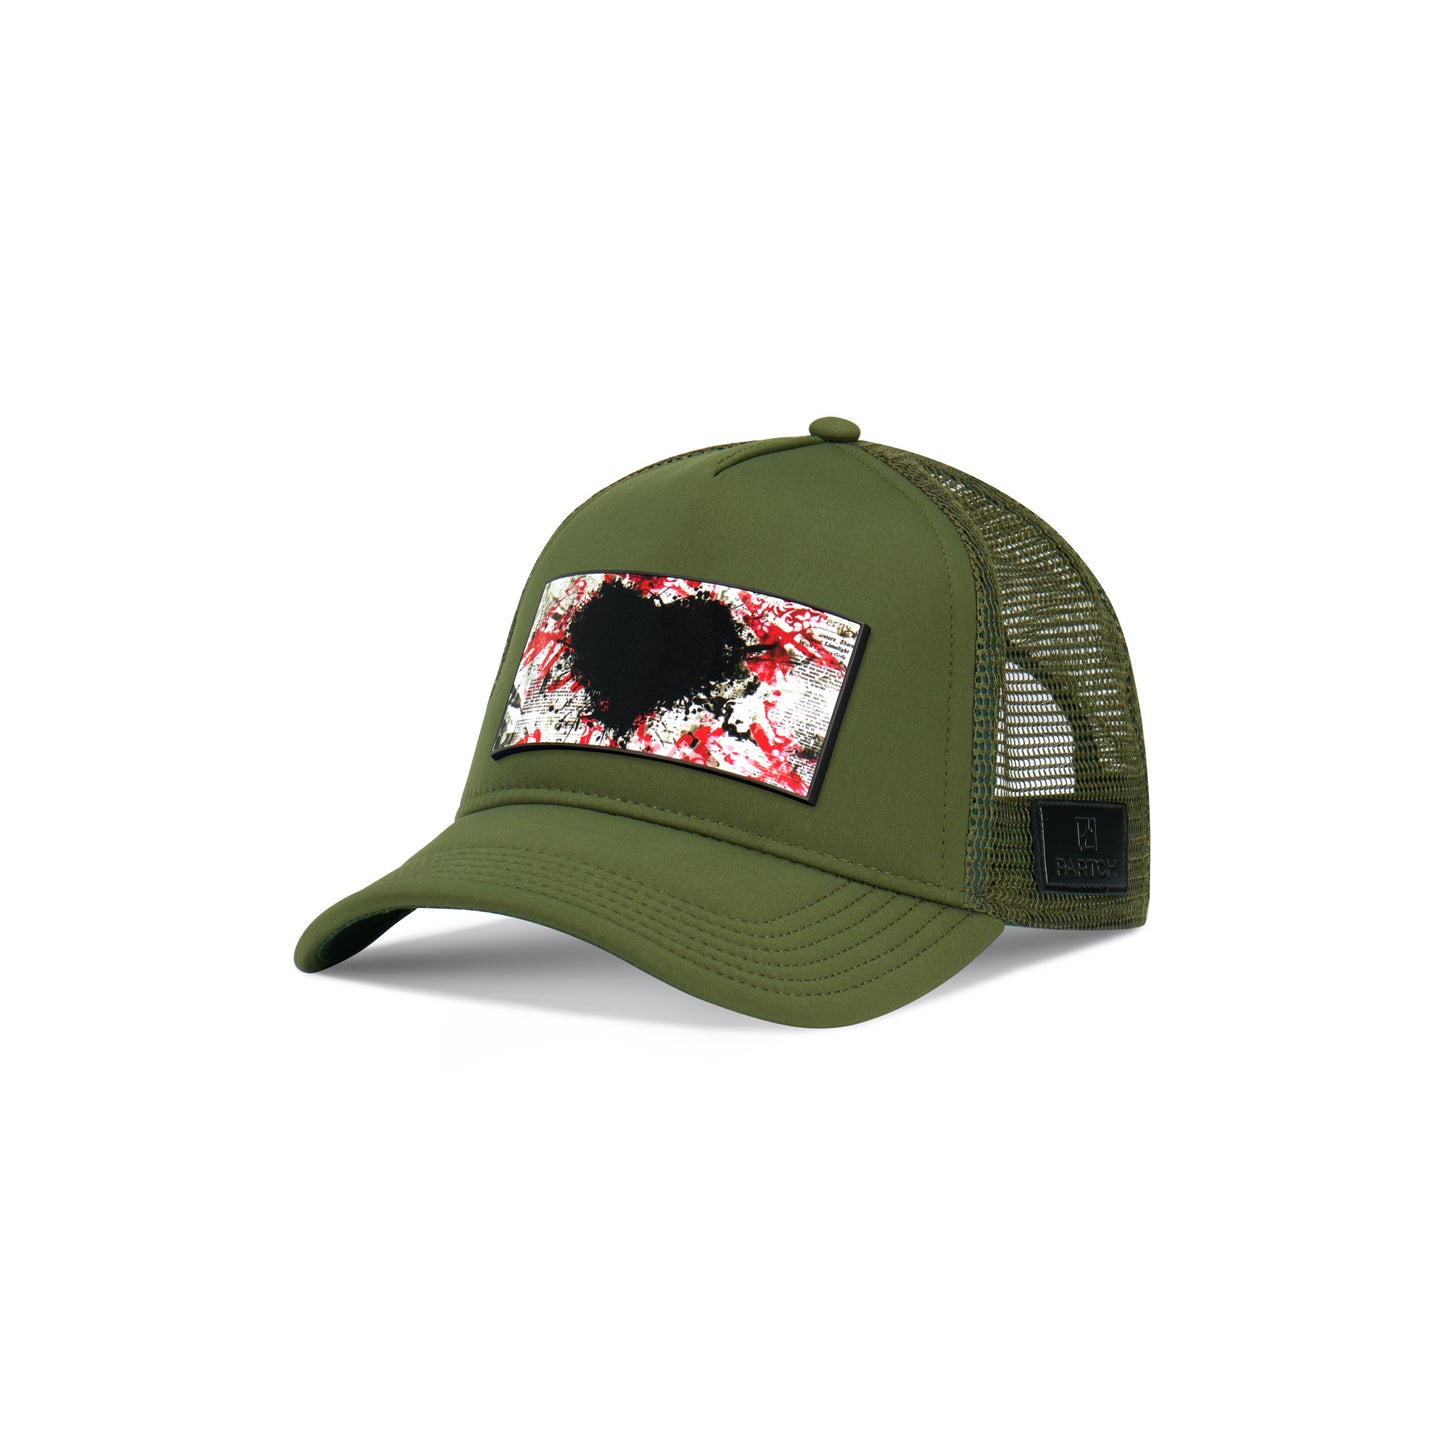 Partch Designer Hats & Caps for men and women | Partch Clip patch Art